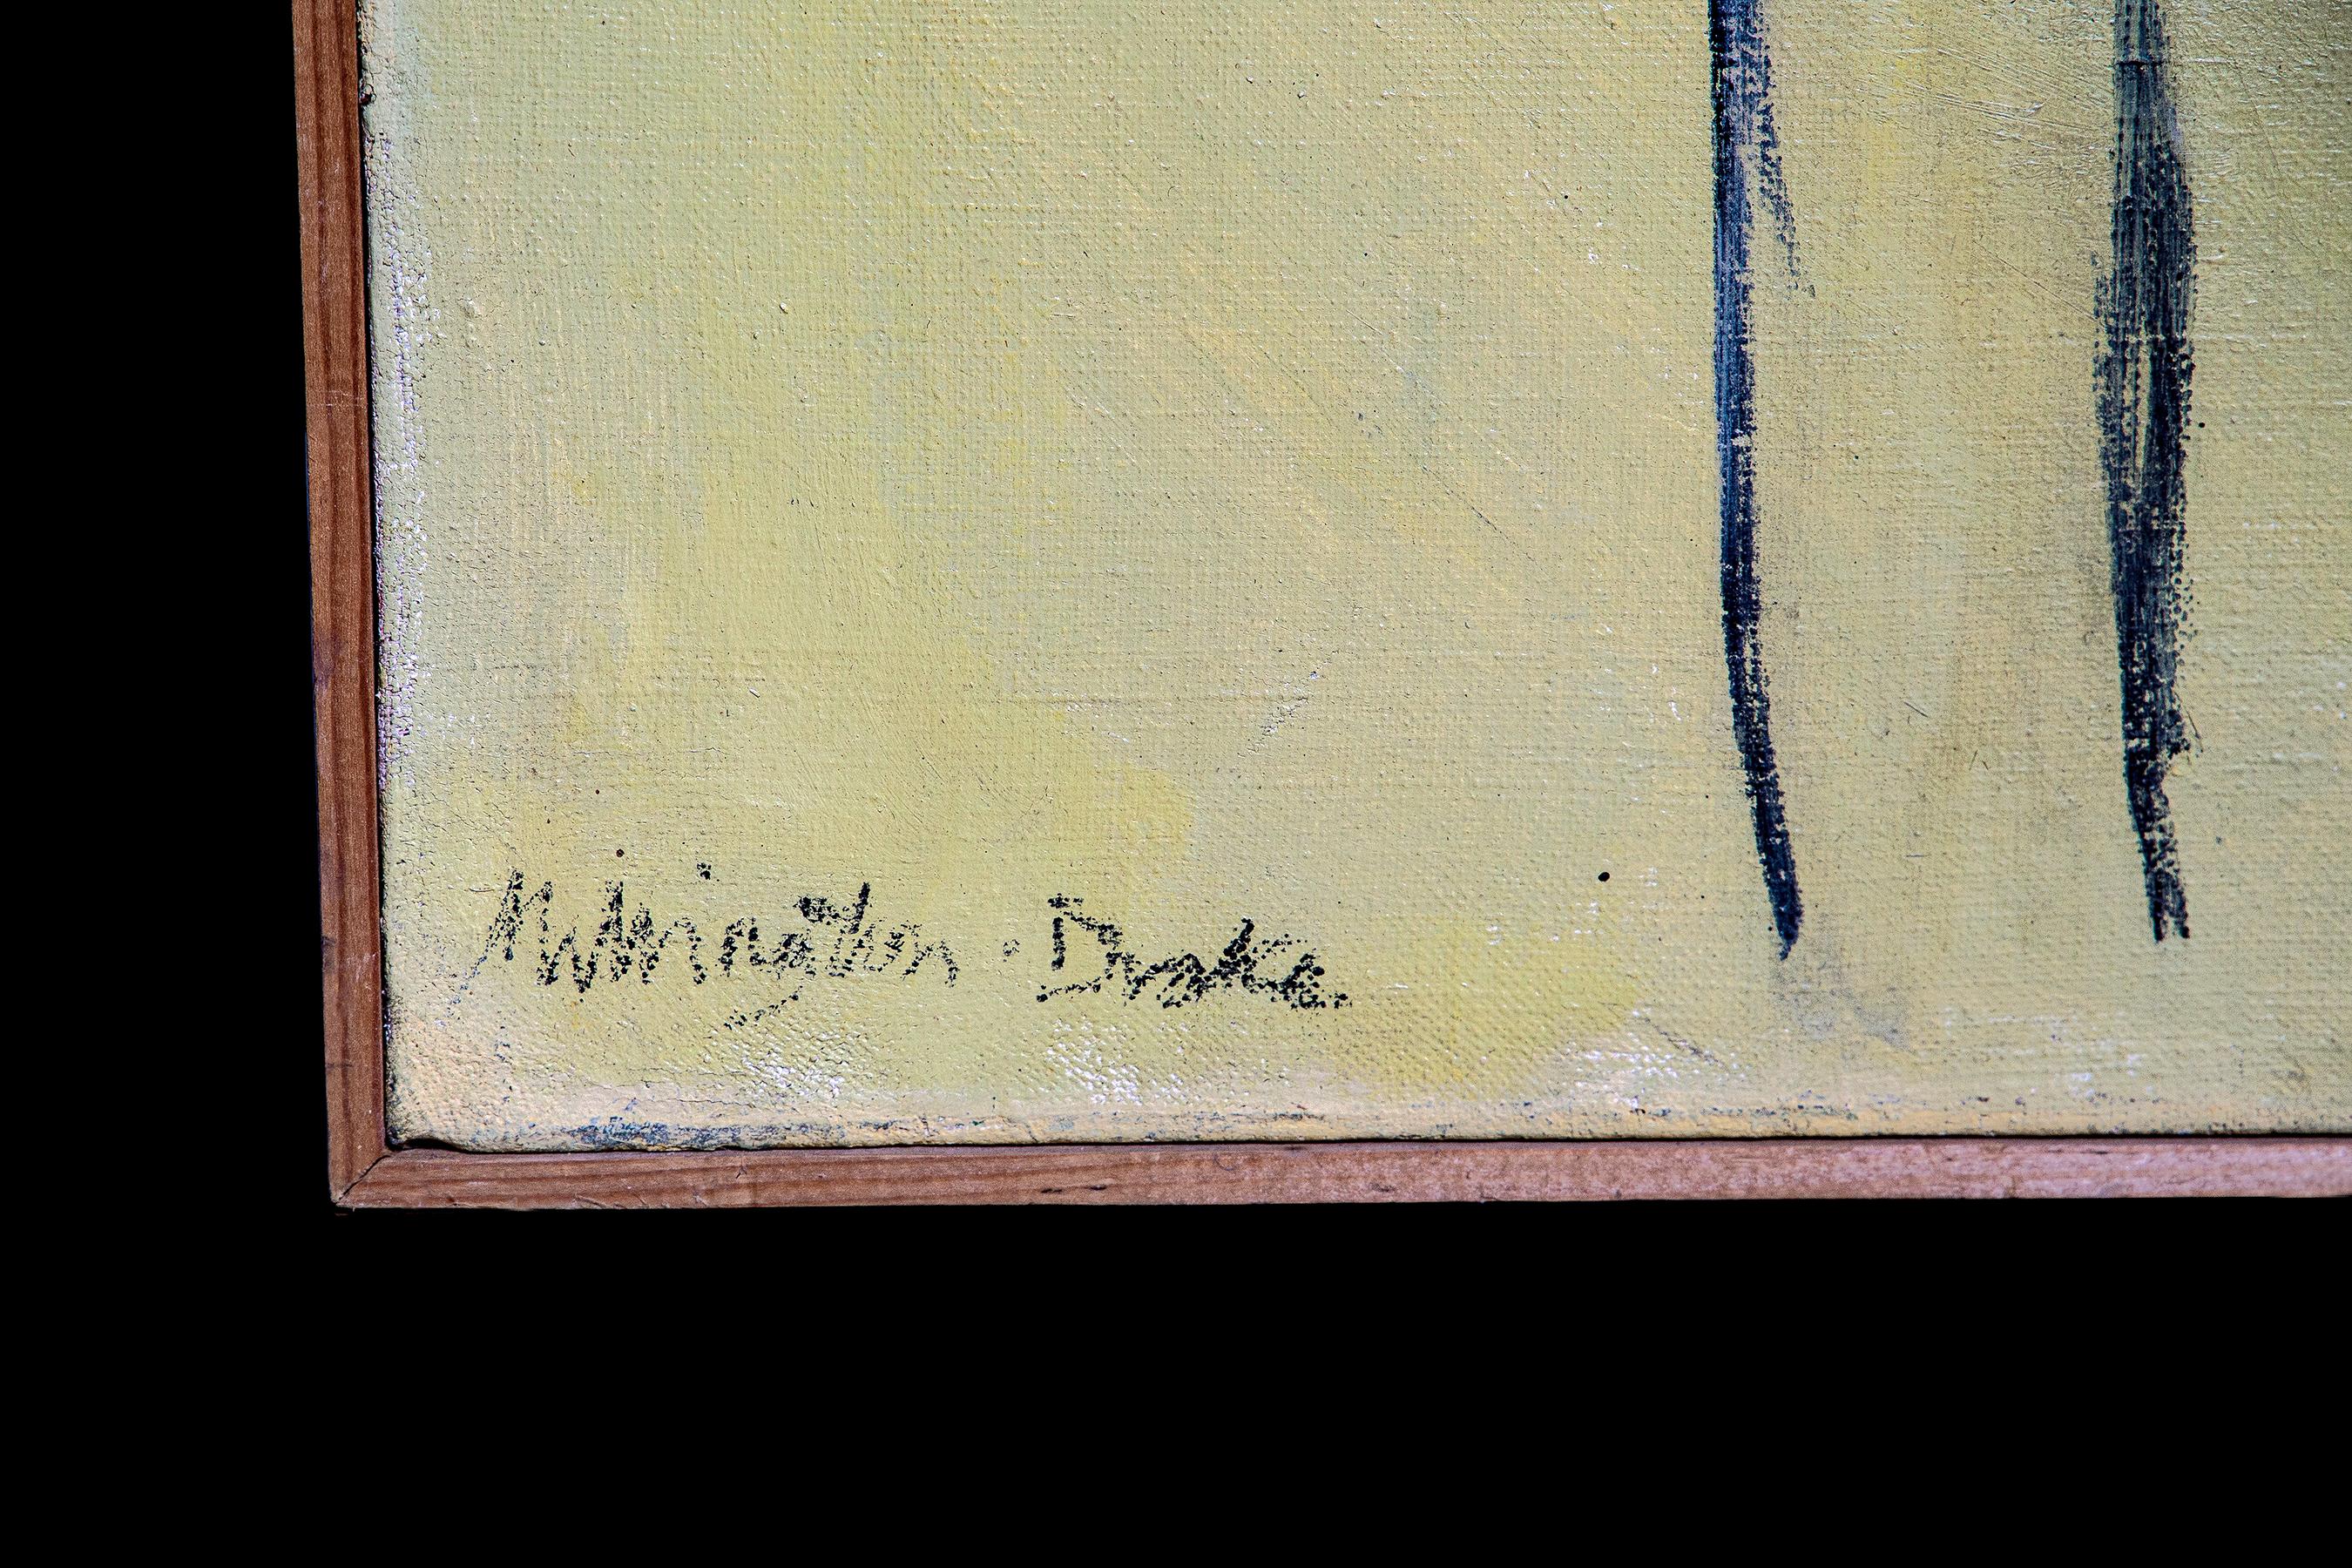 Öl auf Leinwand, Villa Albrizzi - Venetien, 1963

Teddy Millington-Drake (1932-1994) war ein Nomade, Linguist, Lebemann, Ästhet und Gärtnermeister, aber vor allem ein Künstler.

Nach seiner Entlassung aus dem Dienst und teilweise inspiriert